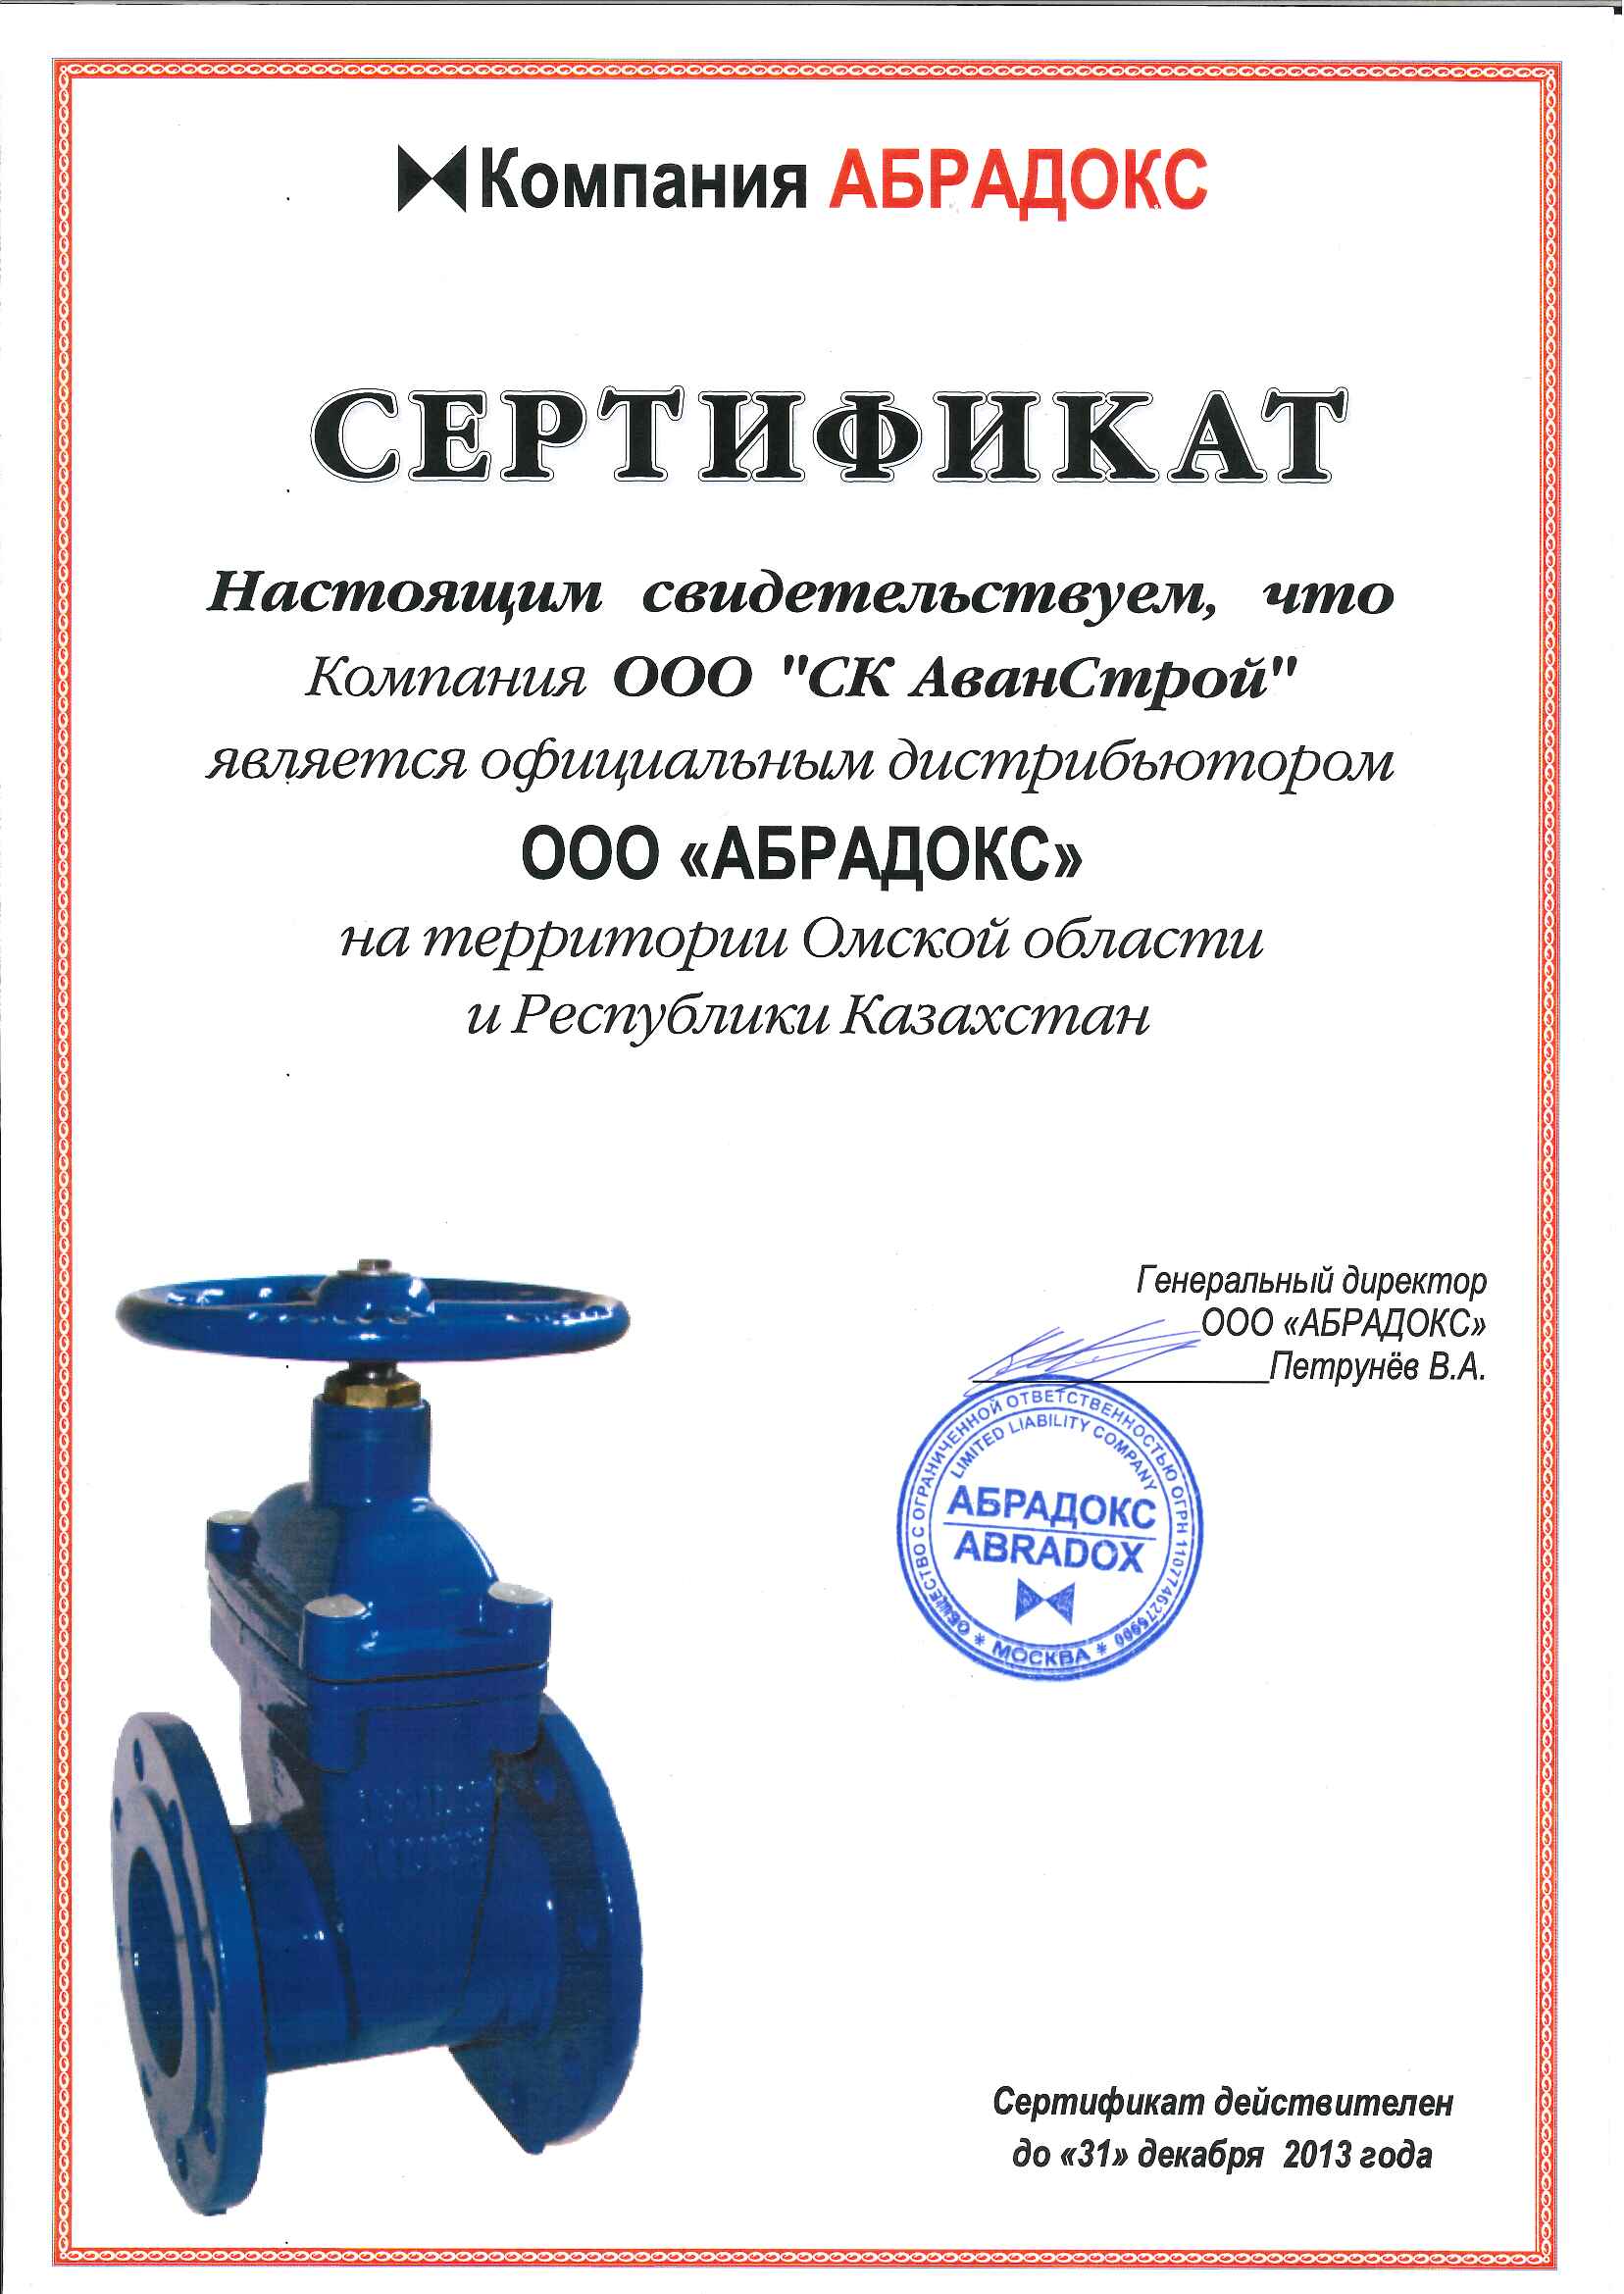 Сертификат компании "Абрадокс"